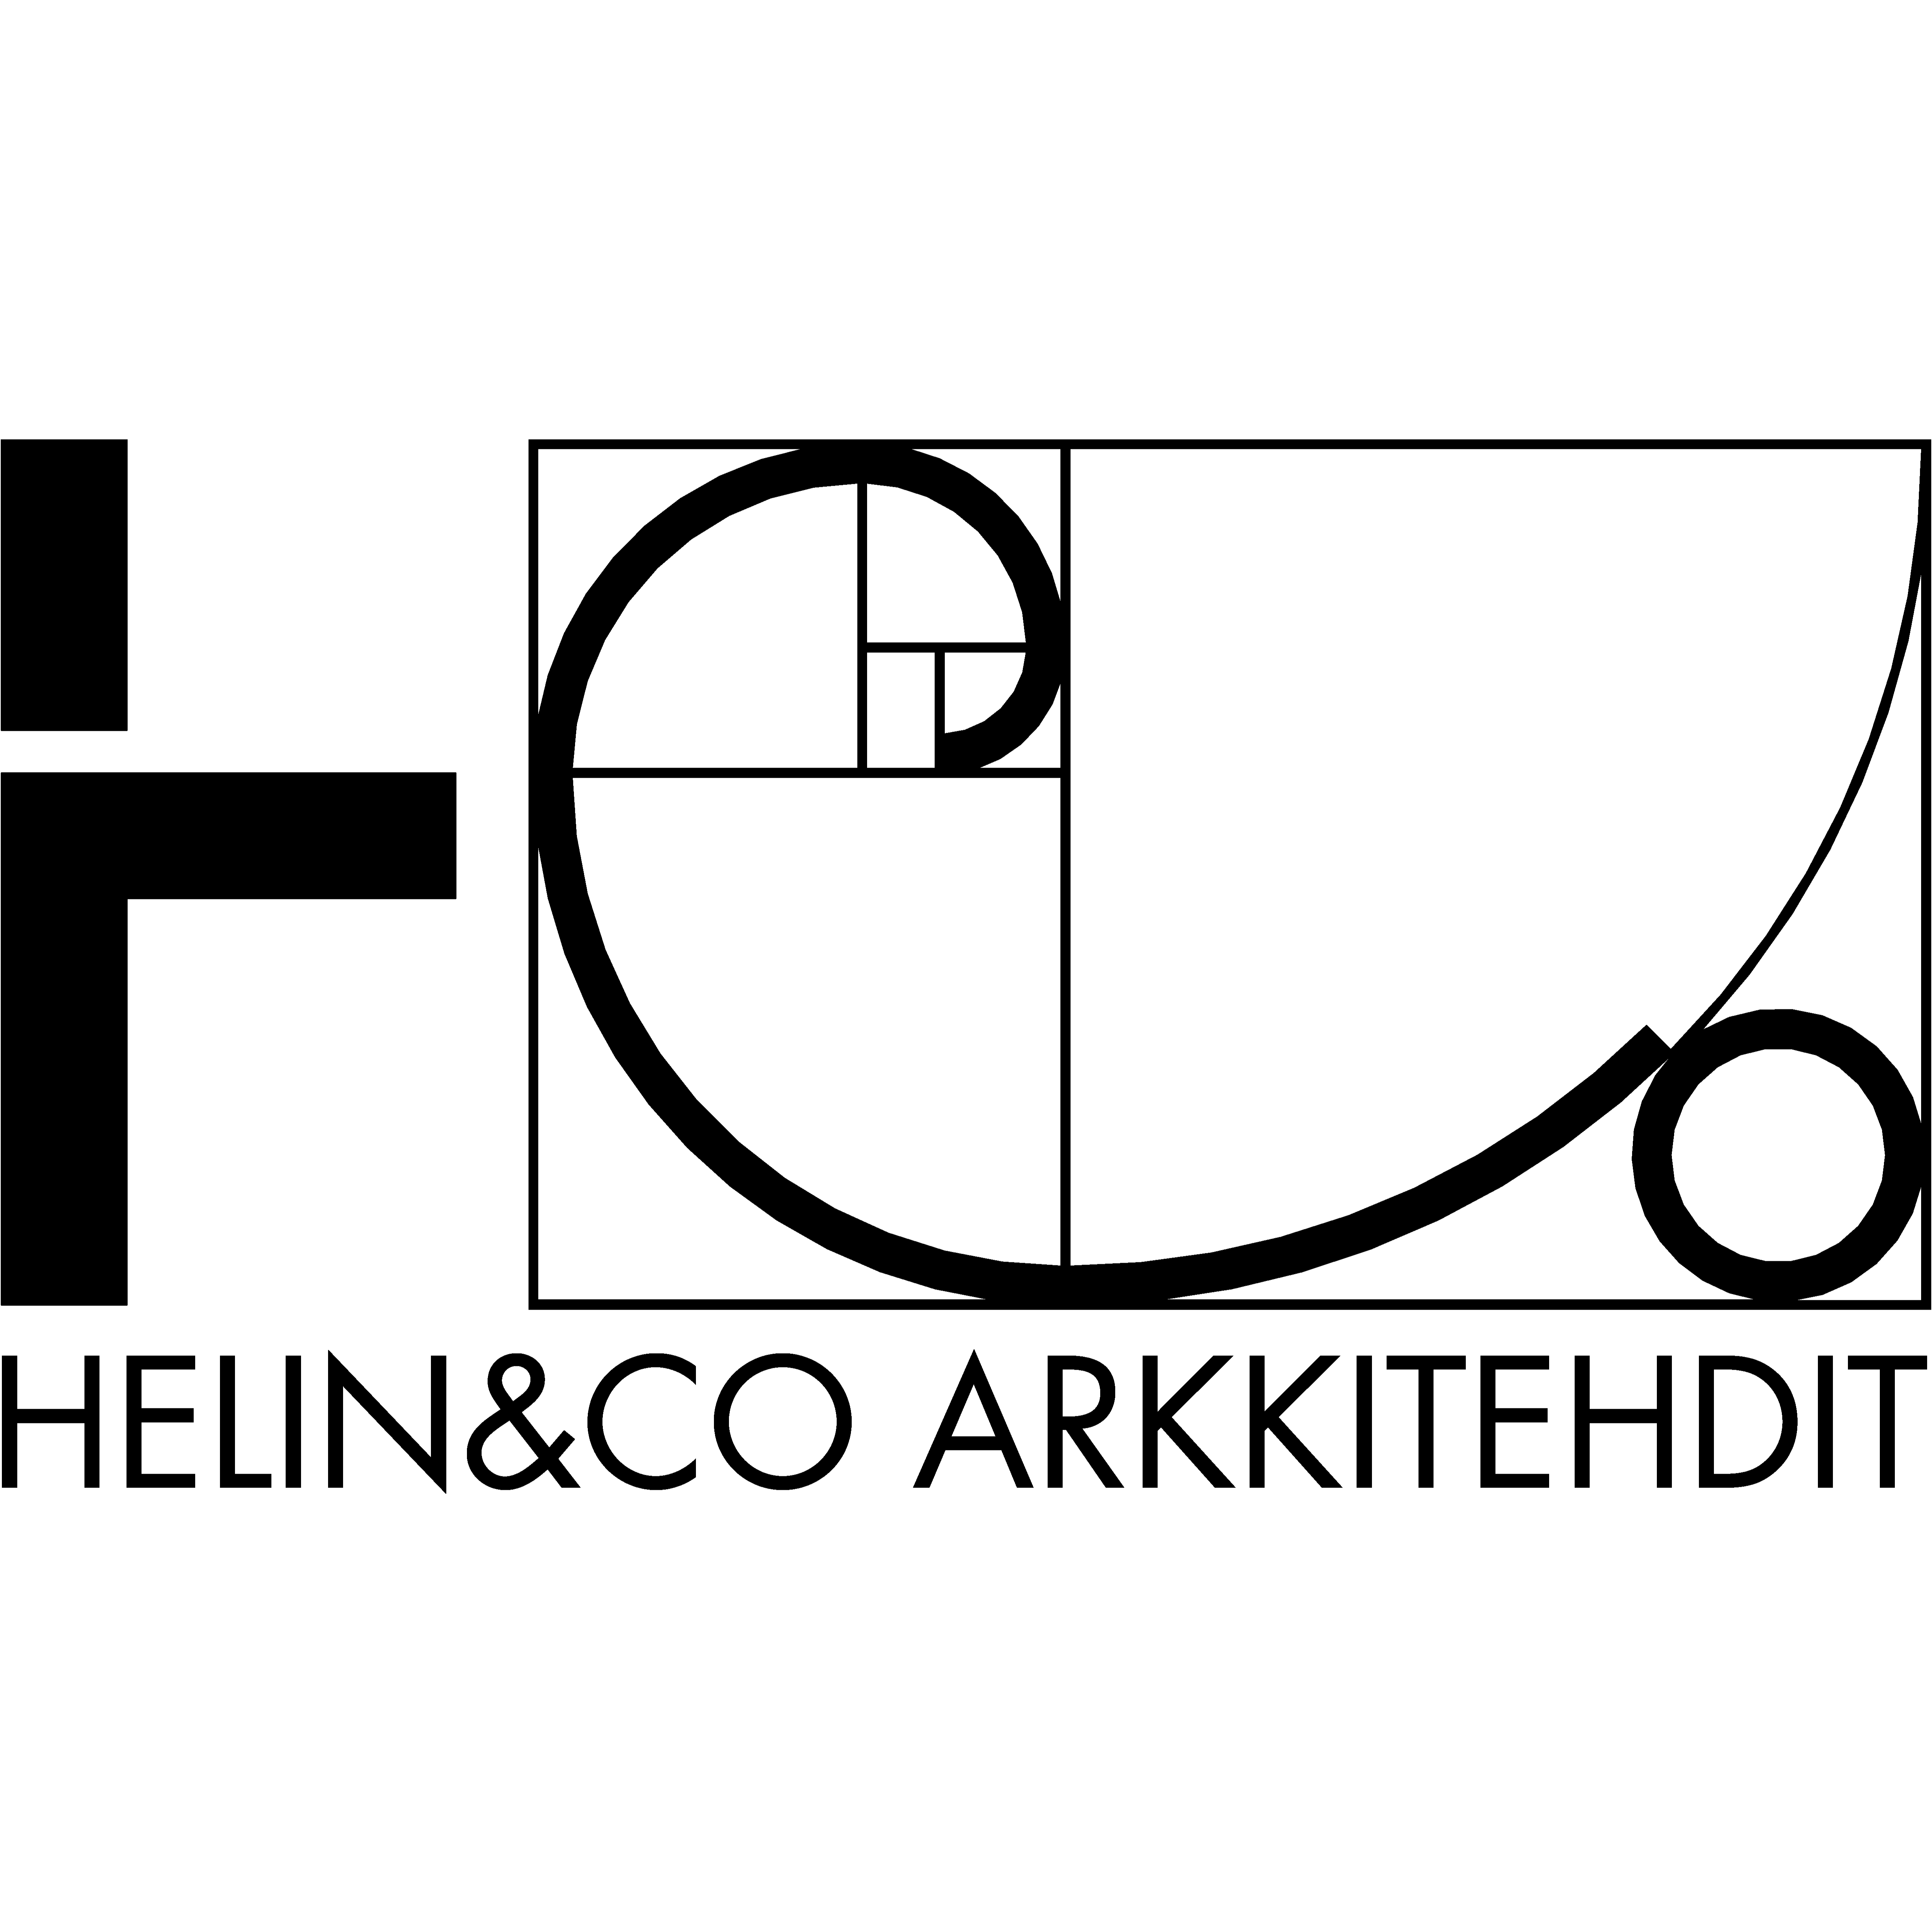 Arkkitehtitoimisto Pekka Helin & Co Oy Logo